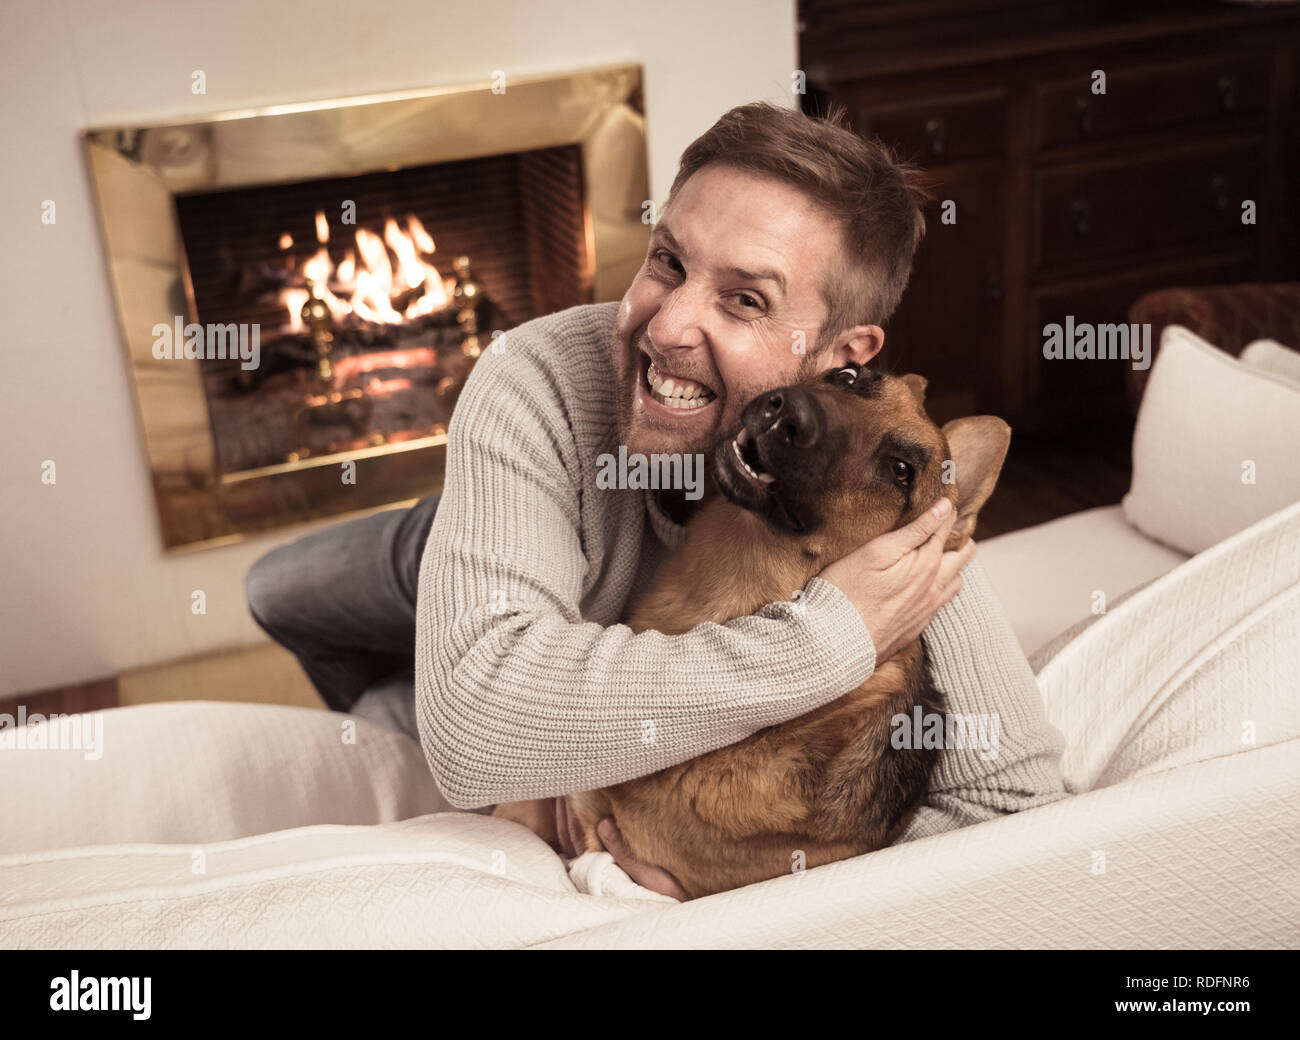 Bel ritratto di uomo sorridente abbracciando il cane pastore tedesco giocando insieme davanti al camino a casa accogliente in giornata invernale in felicità Friendshi Foto Stock